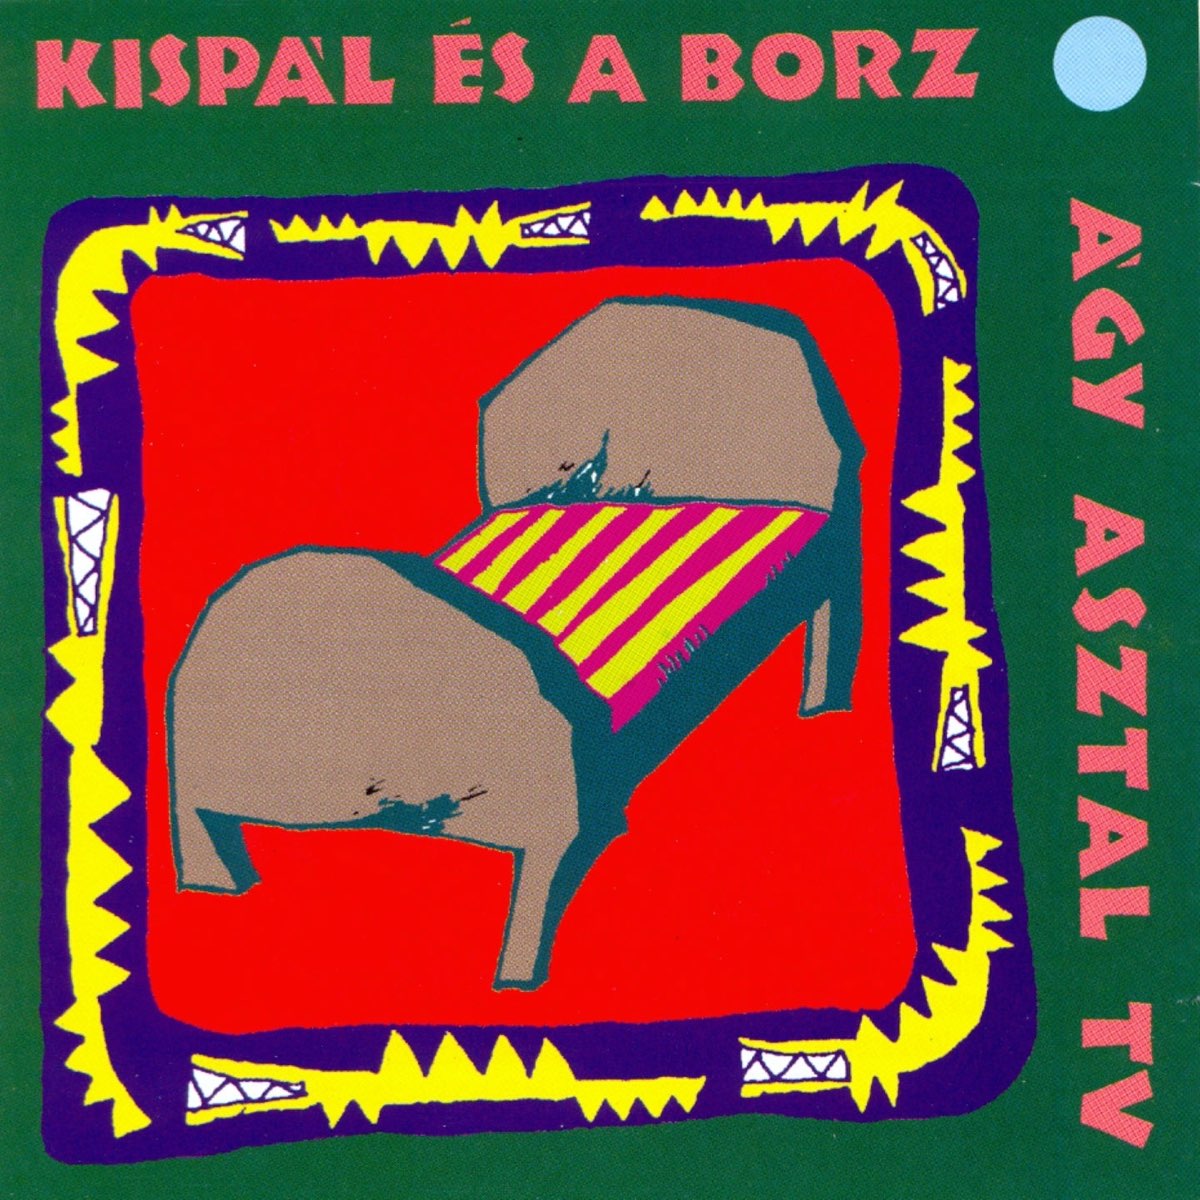 Ágy Asztal TV - Album by Kispál és a Borz - Apple Music